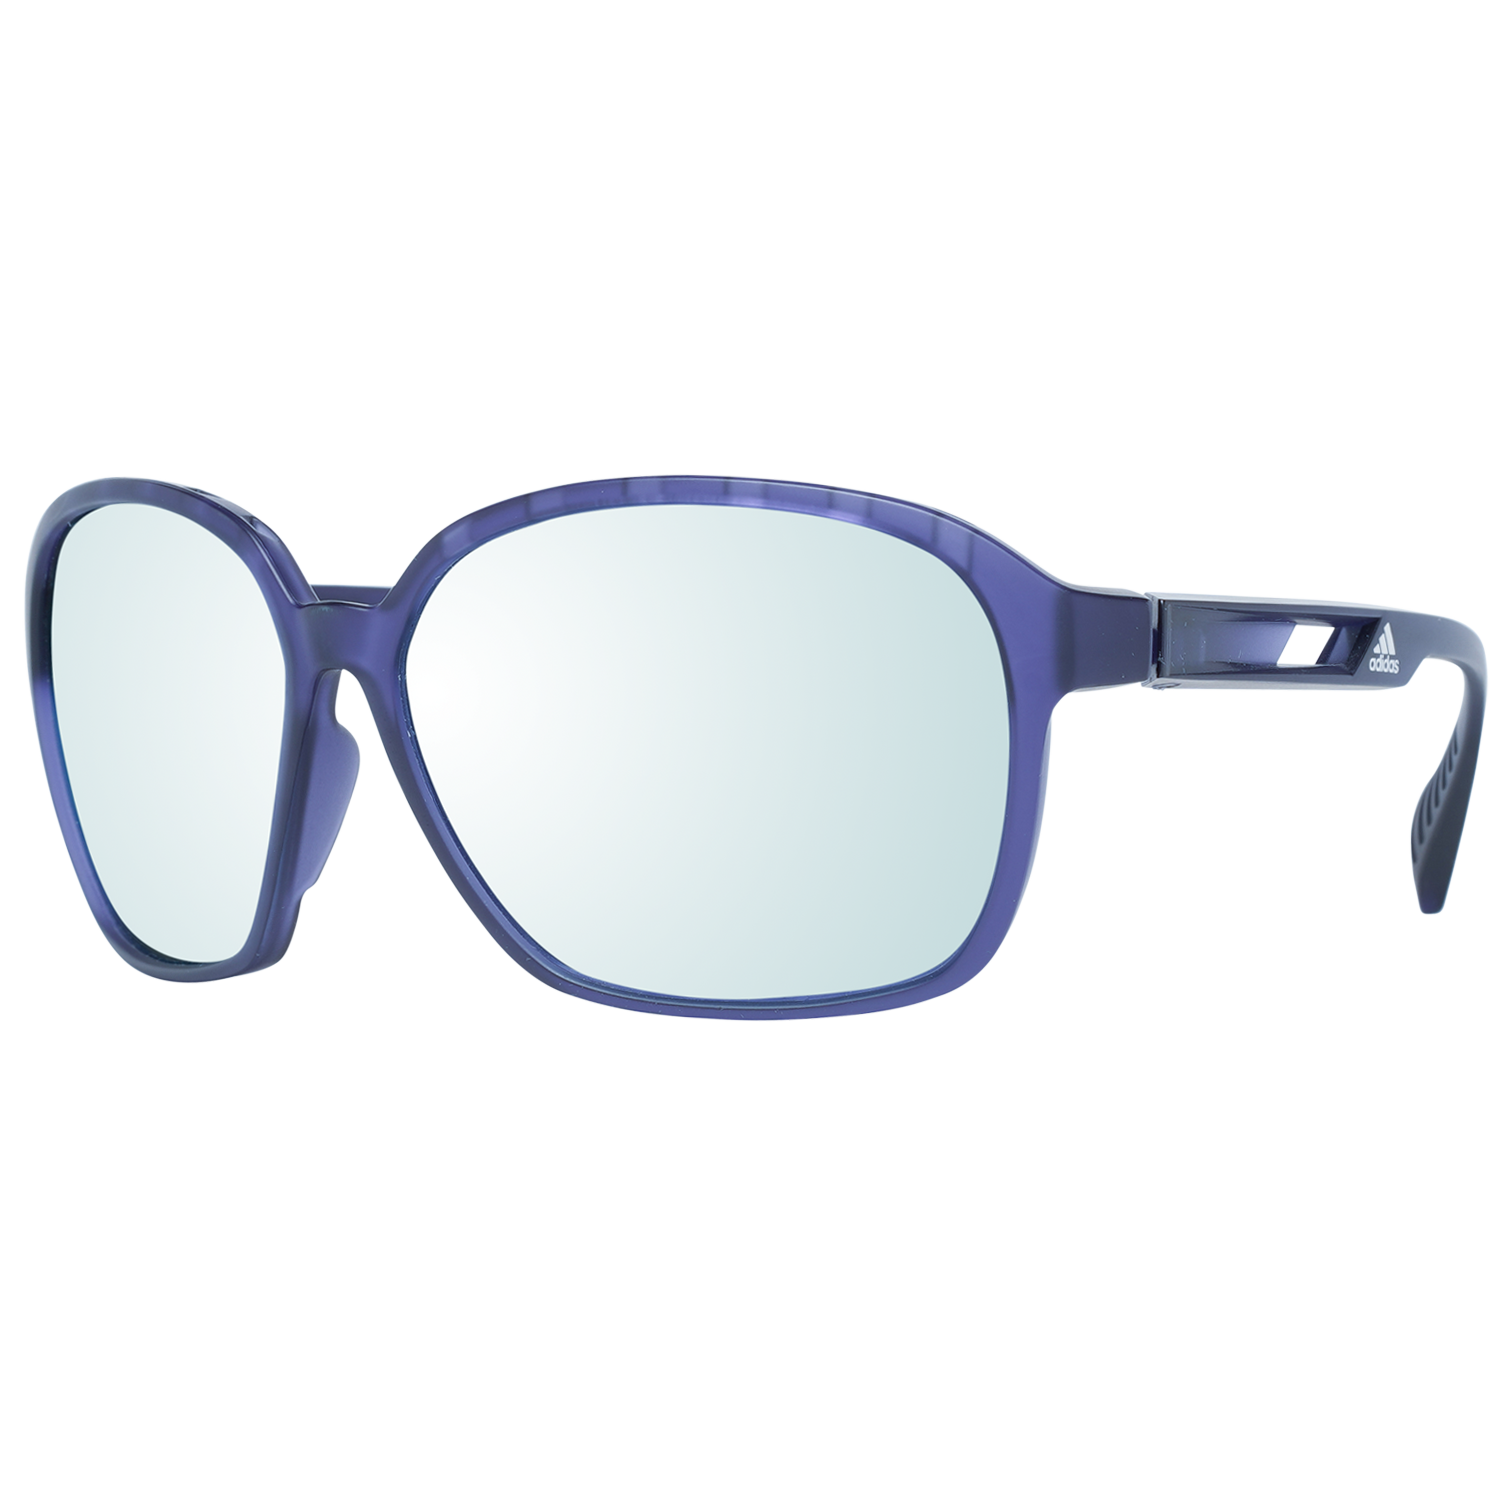 Adidas Sport Sunglasses Adidas Sport Sunglasses SP0013 82D 62 Polarized Eyeglasses Eyewear UK USA Australia 